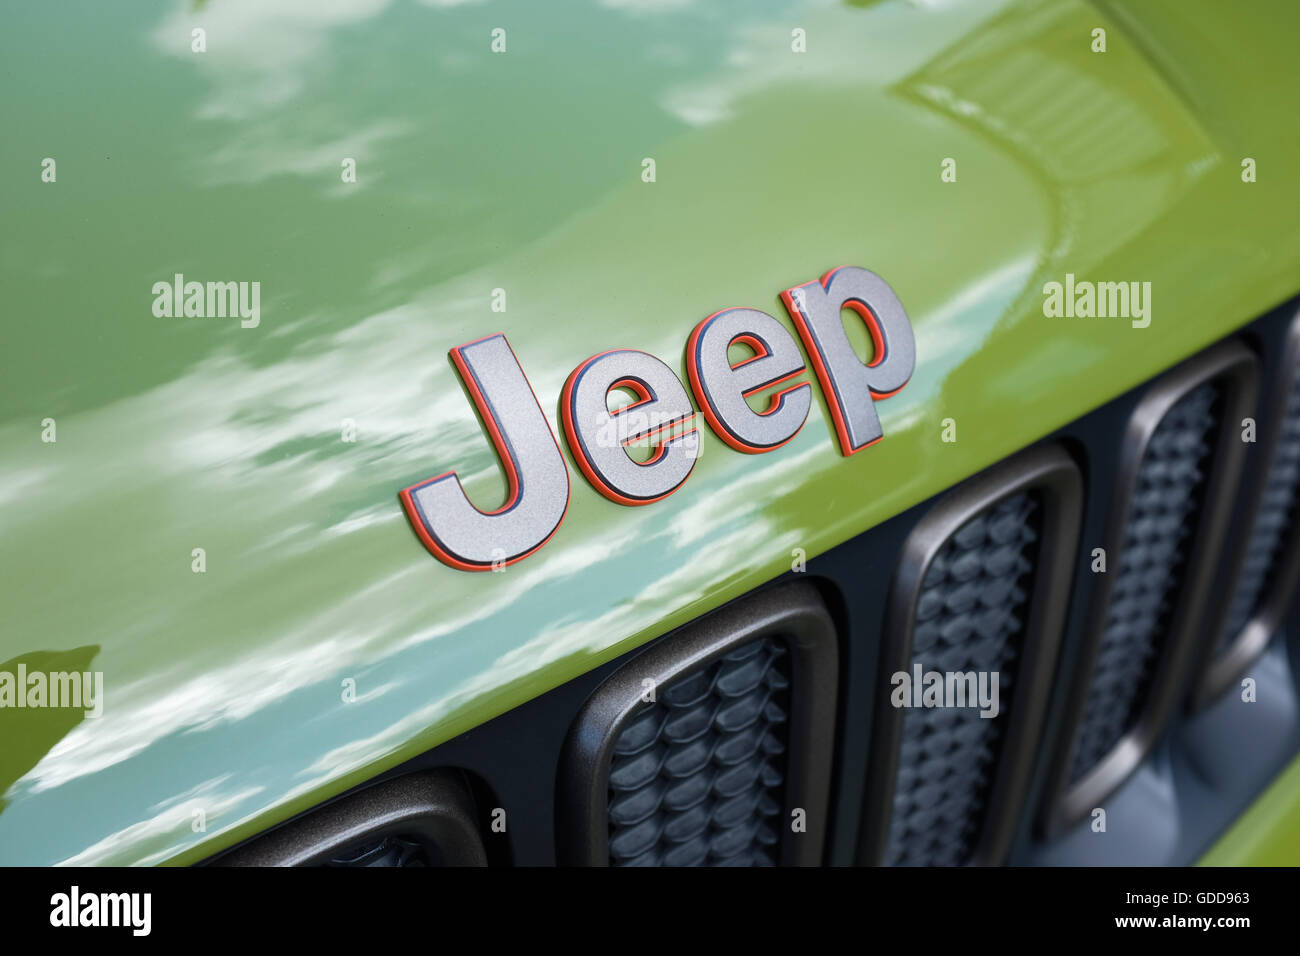 Das Wort "Jeep" auf einem grünen Jeep-Fahrzeug. Stockfoto